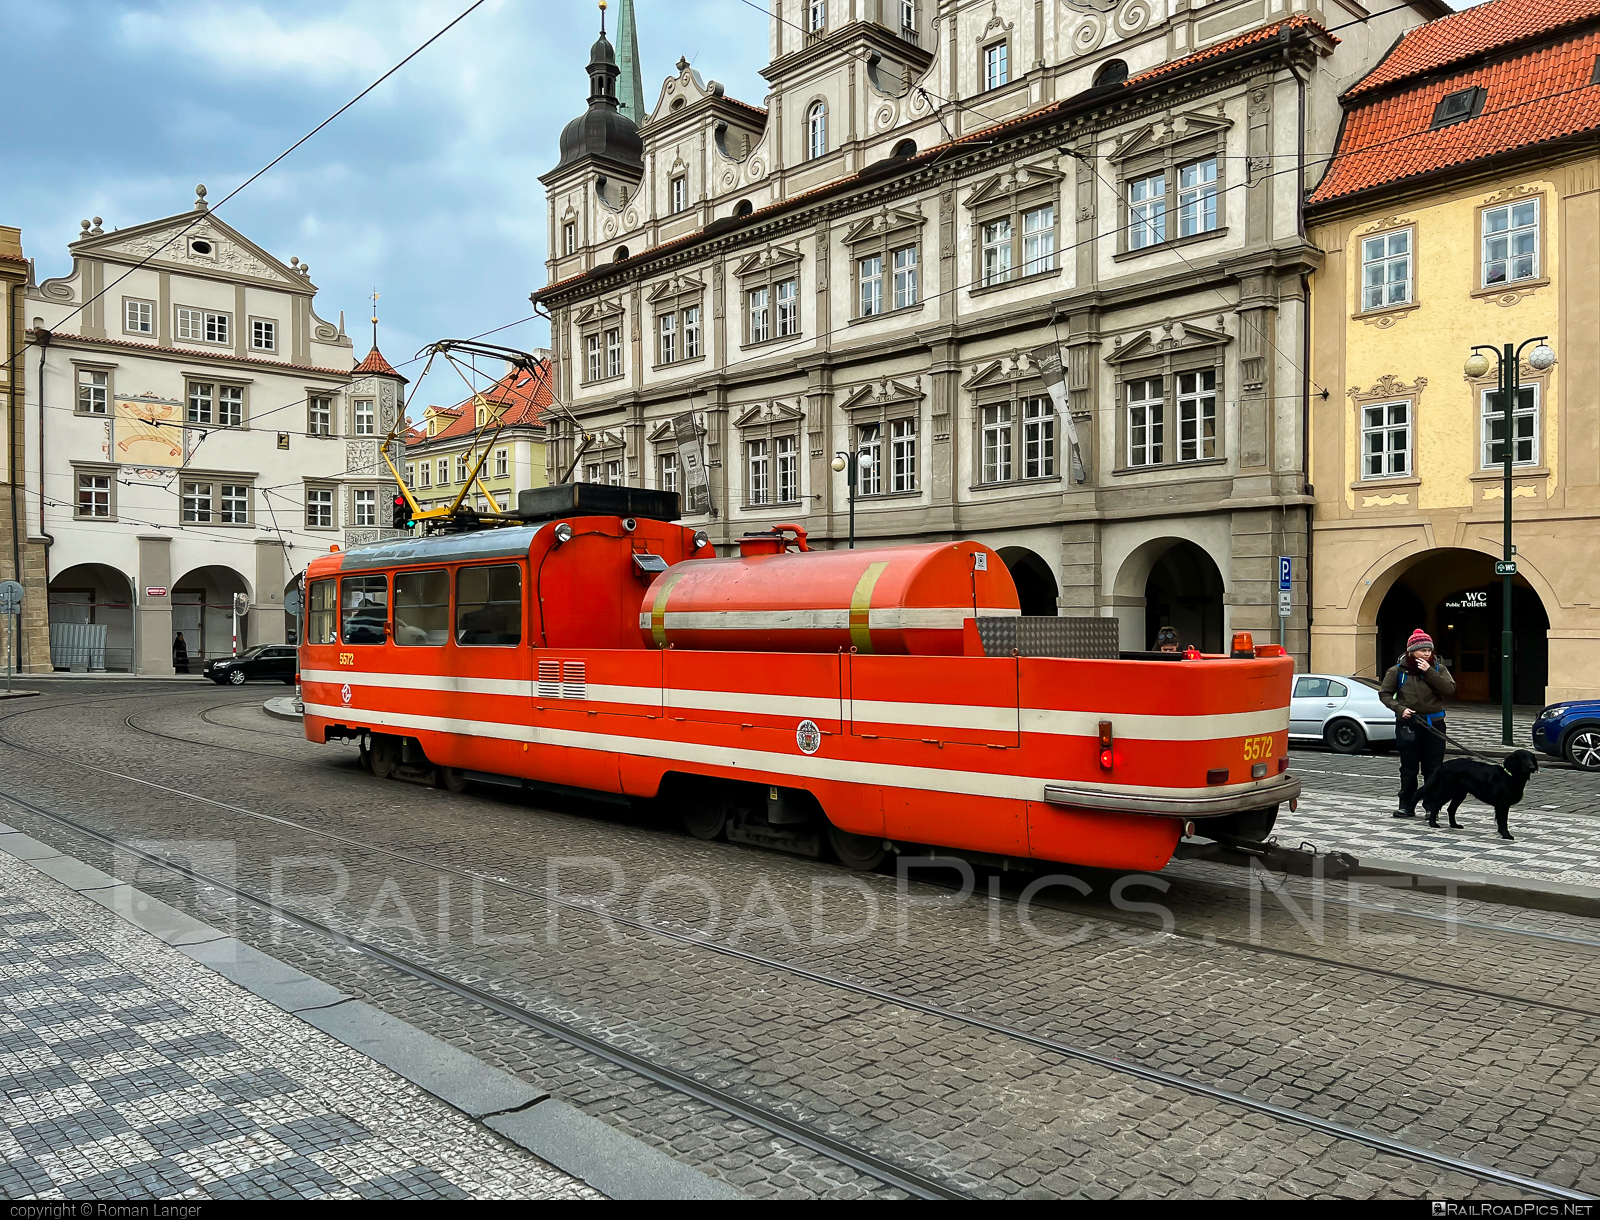 Ústřední dílny Dopravního podniku T3M ”Mazačka” - 5572 operated by Dopravní podnik hlavního města Prahy #DopravniPodnikHlavnihoMestaPrahy #UstredniDilnyDopravnihoPodniku #dphmp #dpp #mazacka #tram